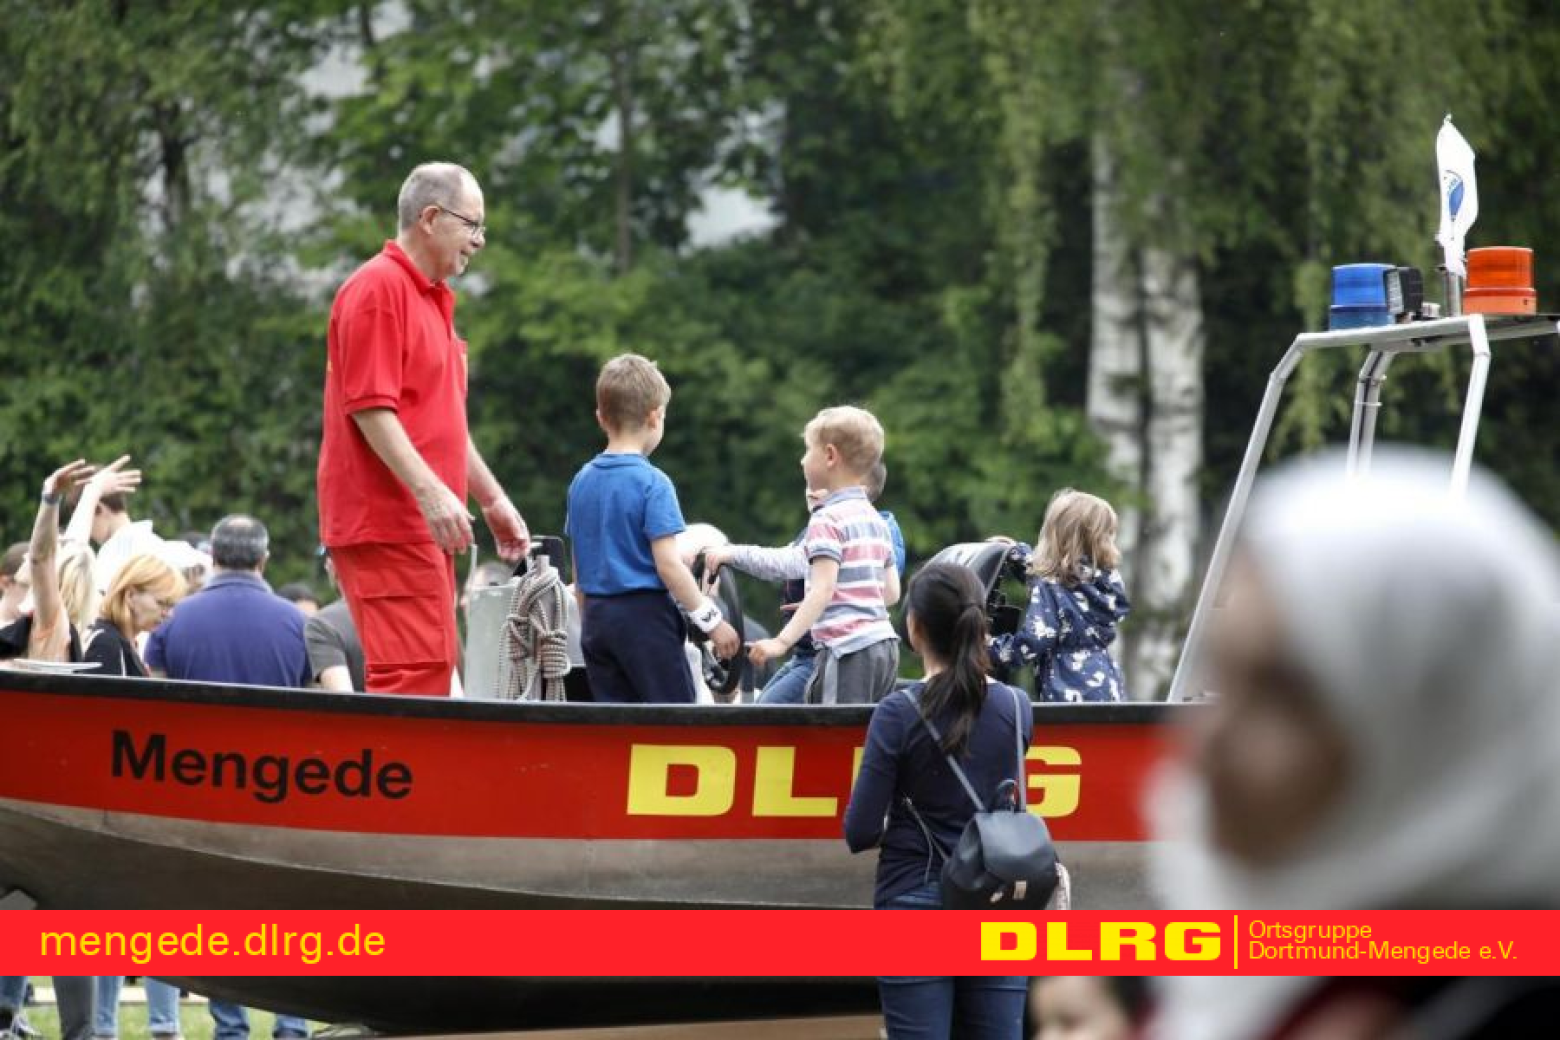 Der DLRG Ortsgruppe Dortmund Mengede e.V. bei einer Veranstaltung